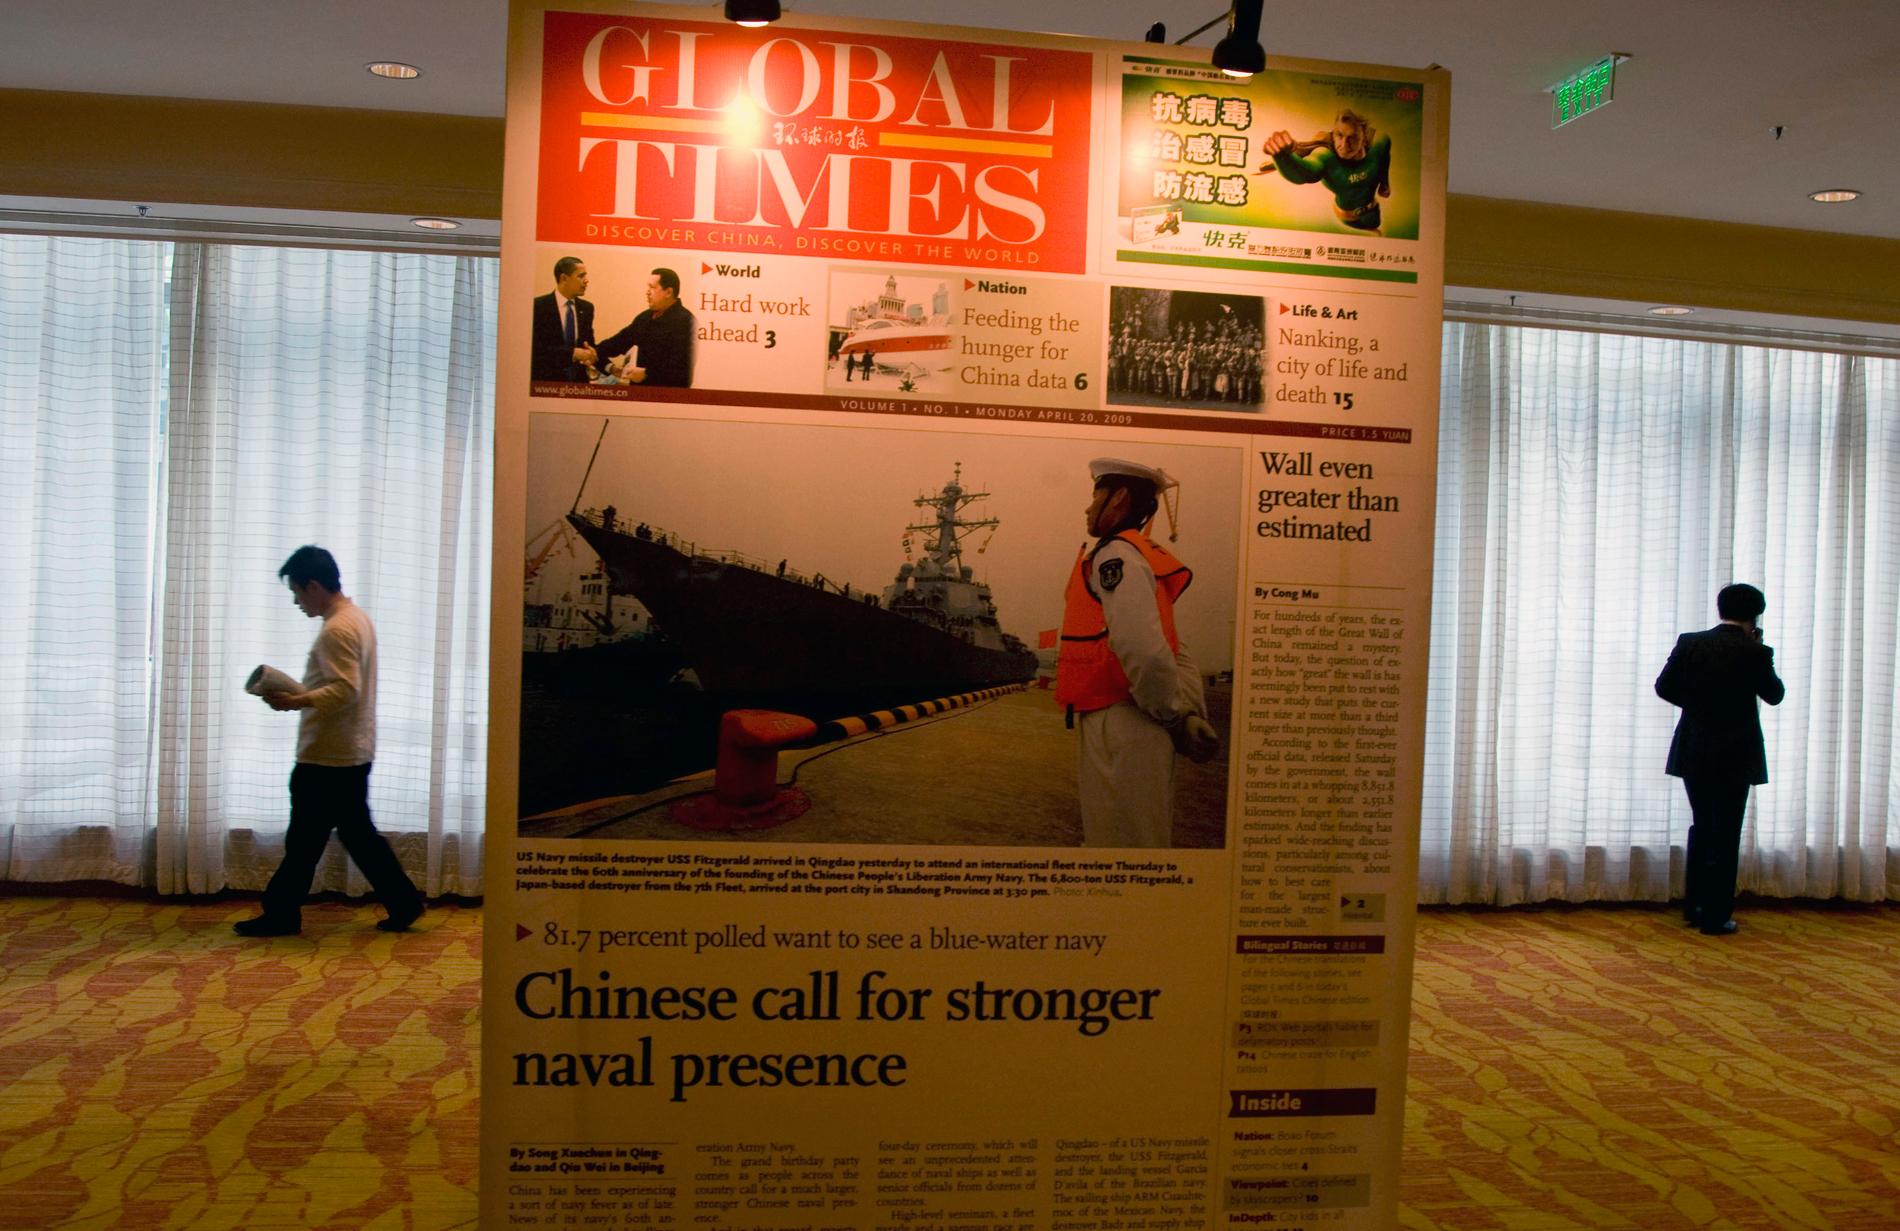 En förstoring av det första numret av den engelskspråkiga tidningen The Global Times som den kinesiska staten styr. Nu skärps tonen mot tidningen i USA. Arkivbild.